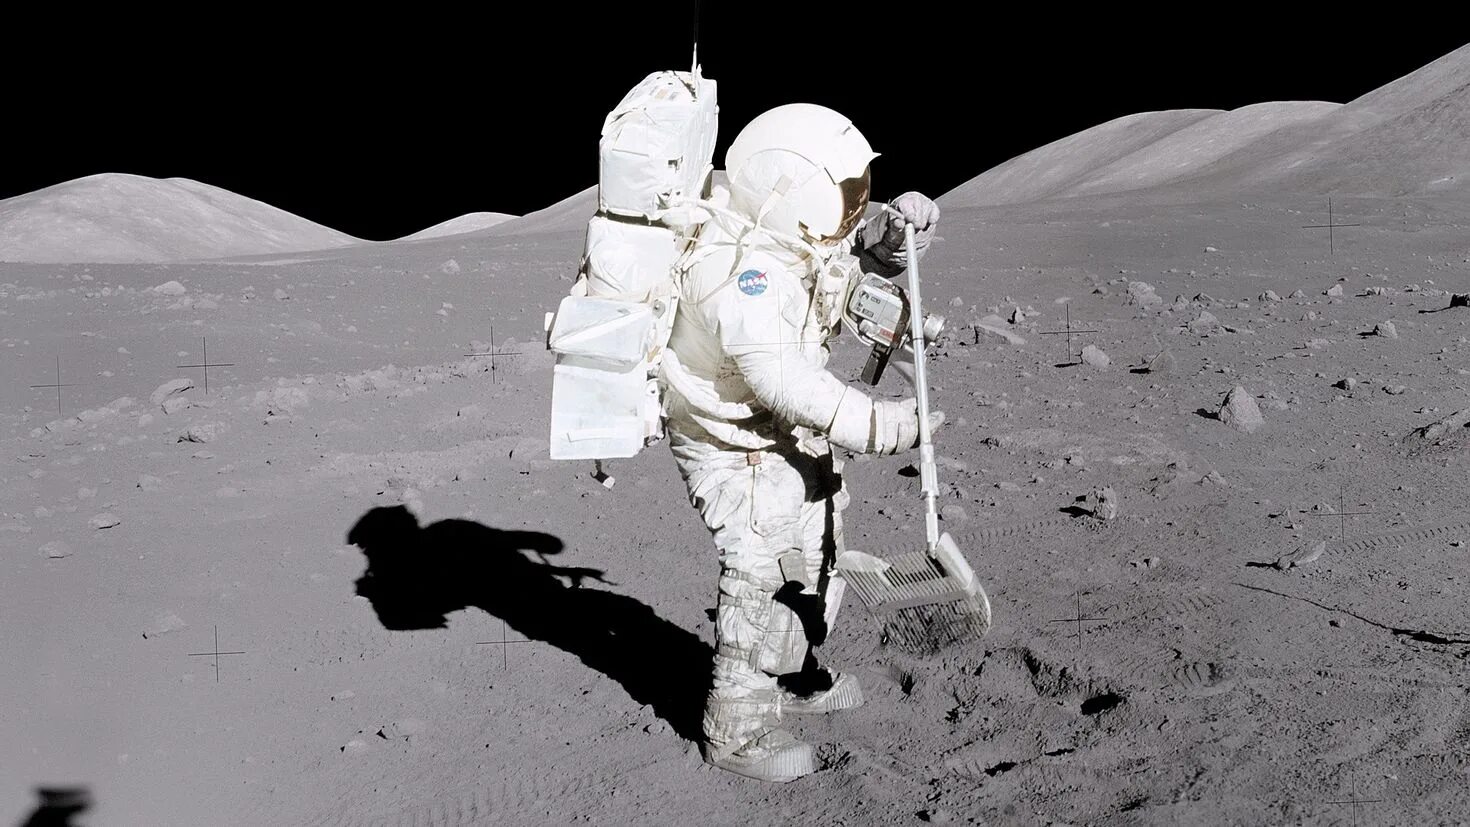 Человек который впервые оказался на поверхности луны. Аполлон 17. Апполо 11 на Луне.